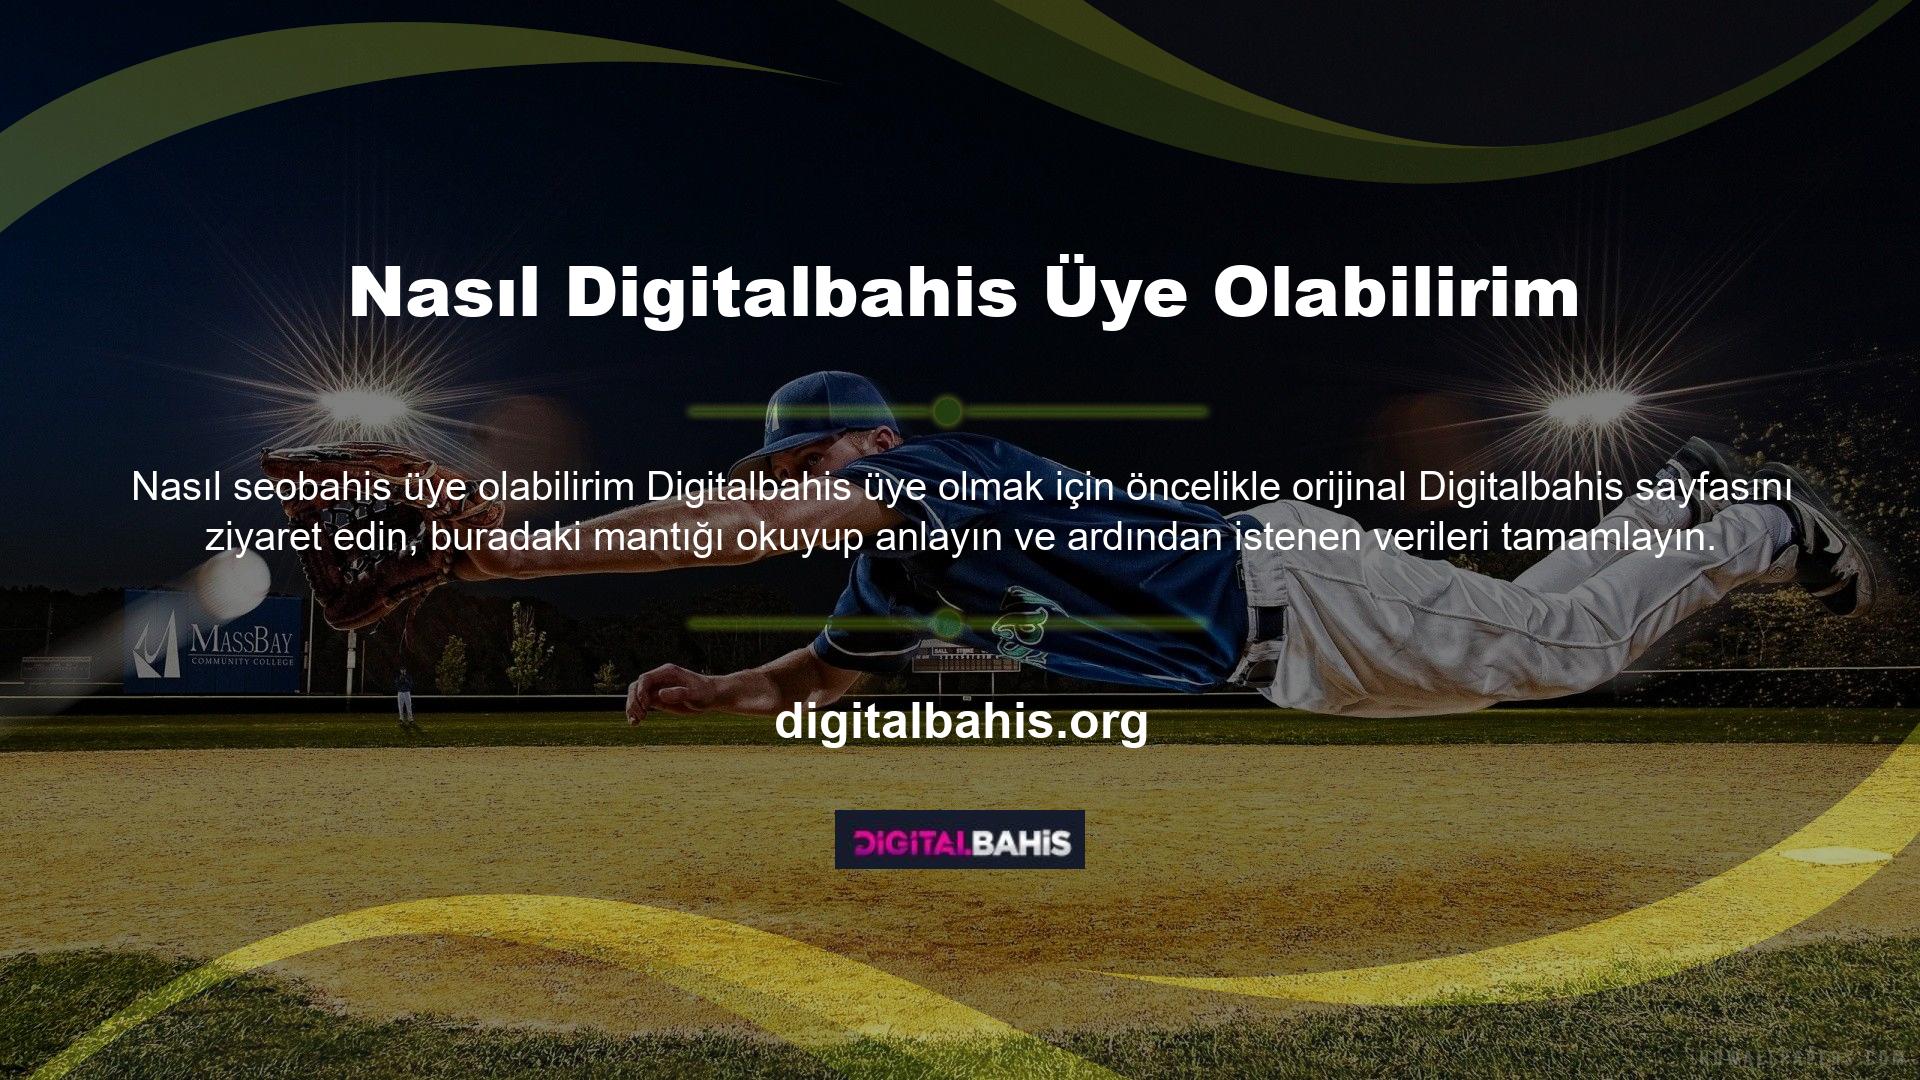 Digitalbahis web sitesine Digitalbahis hesabından erişilebilir